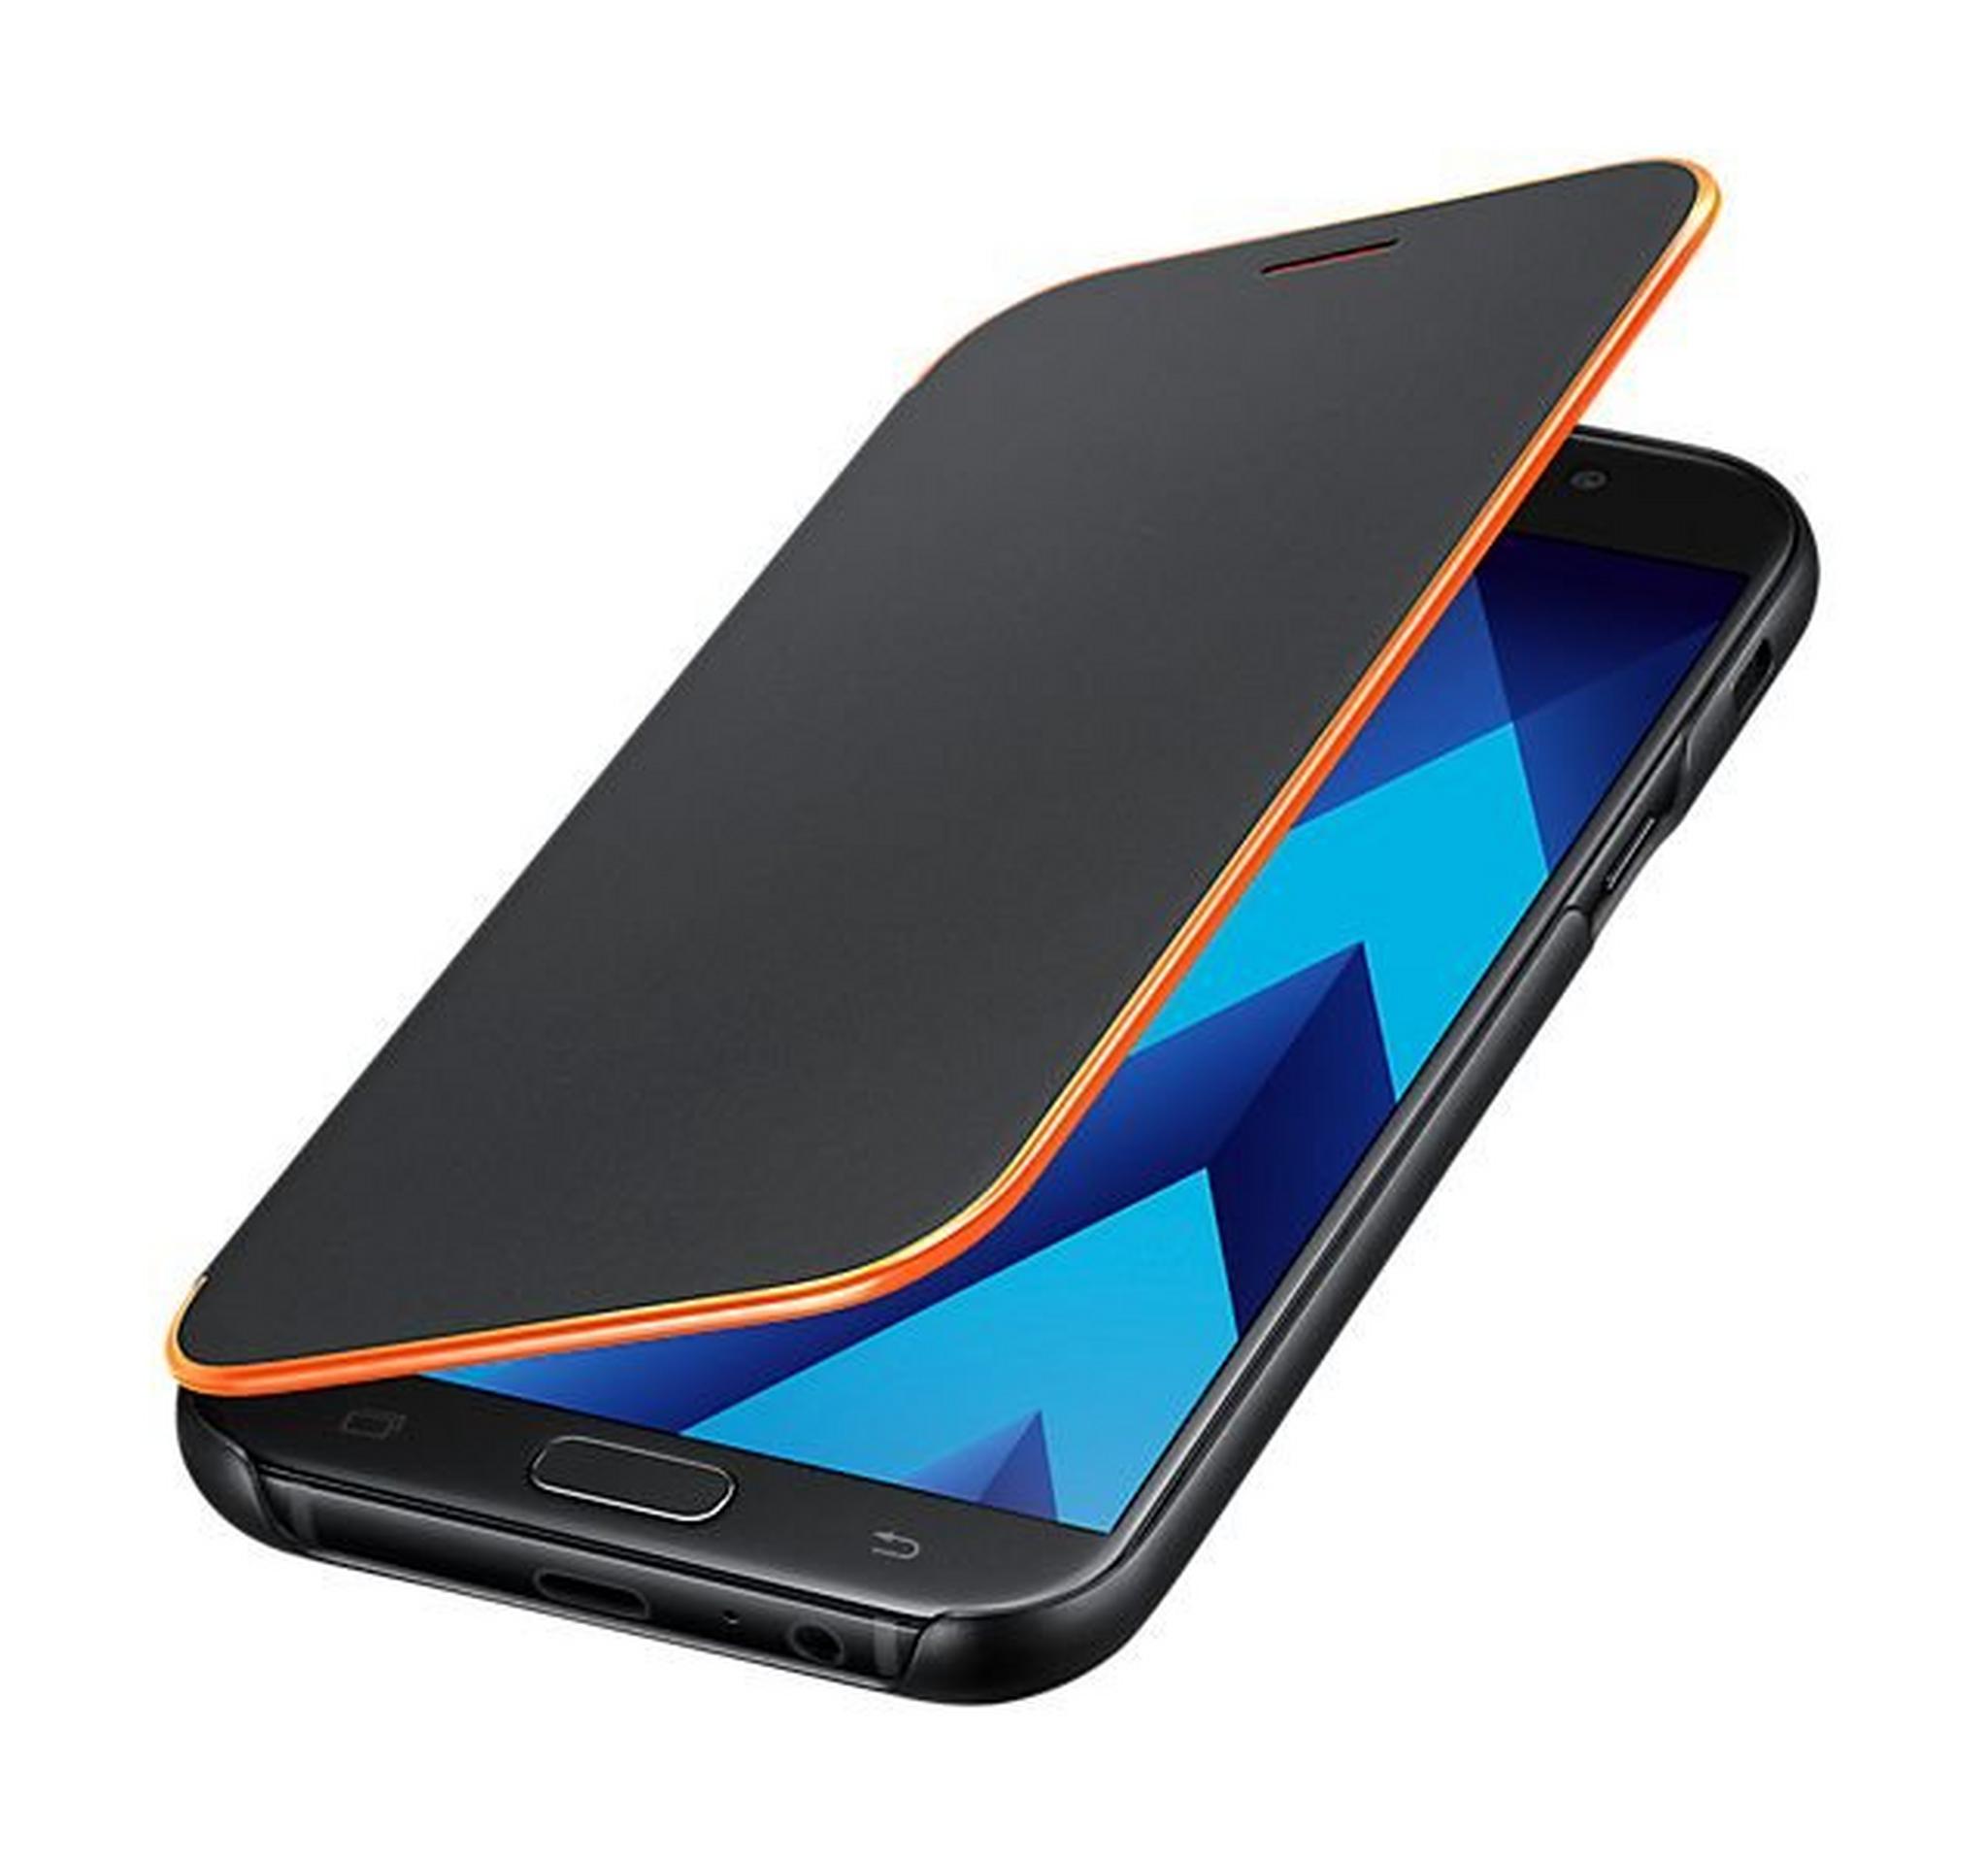 Samsung Galaxy A5 2017 Neon Flip Cover (EF-FA520PBEGWW) - Black